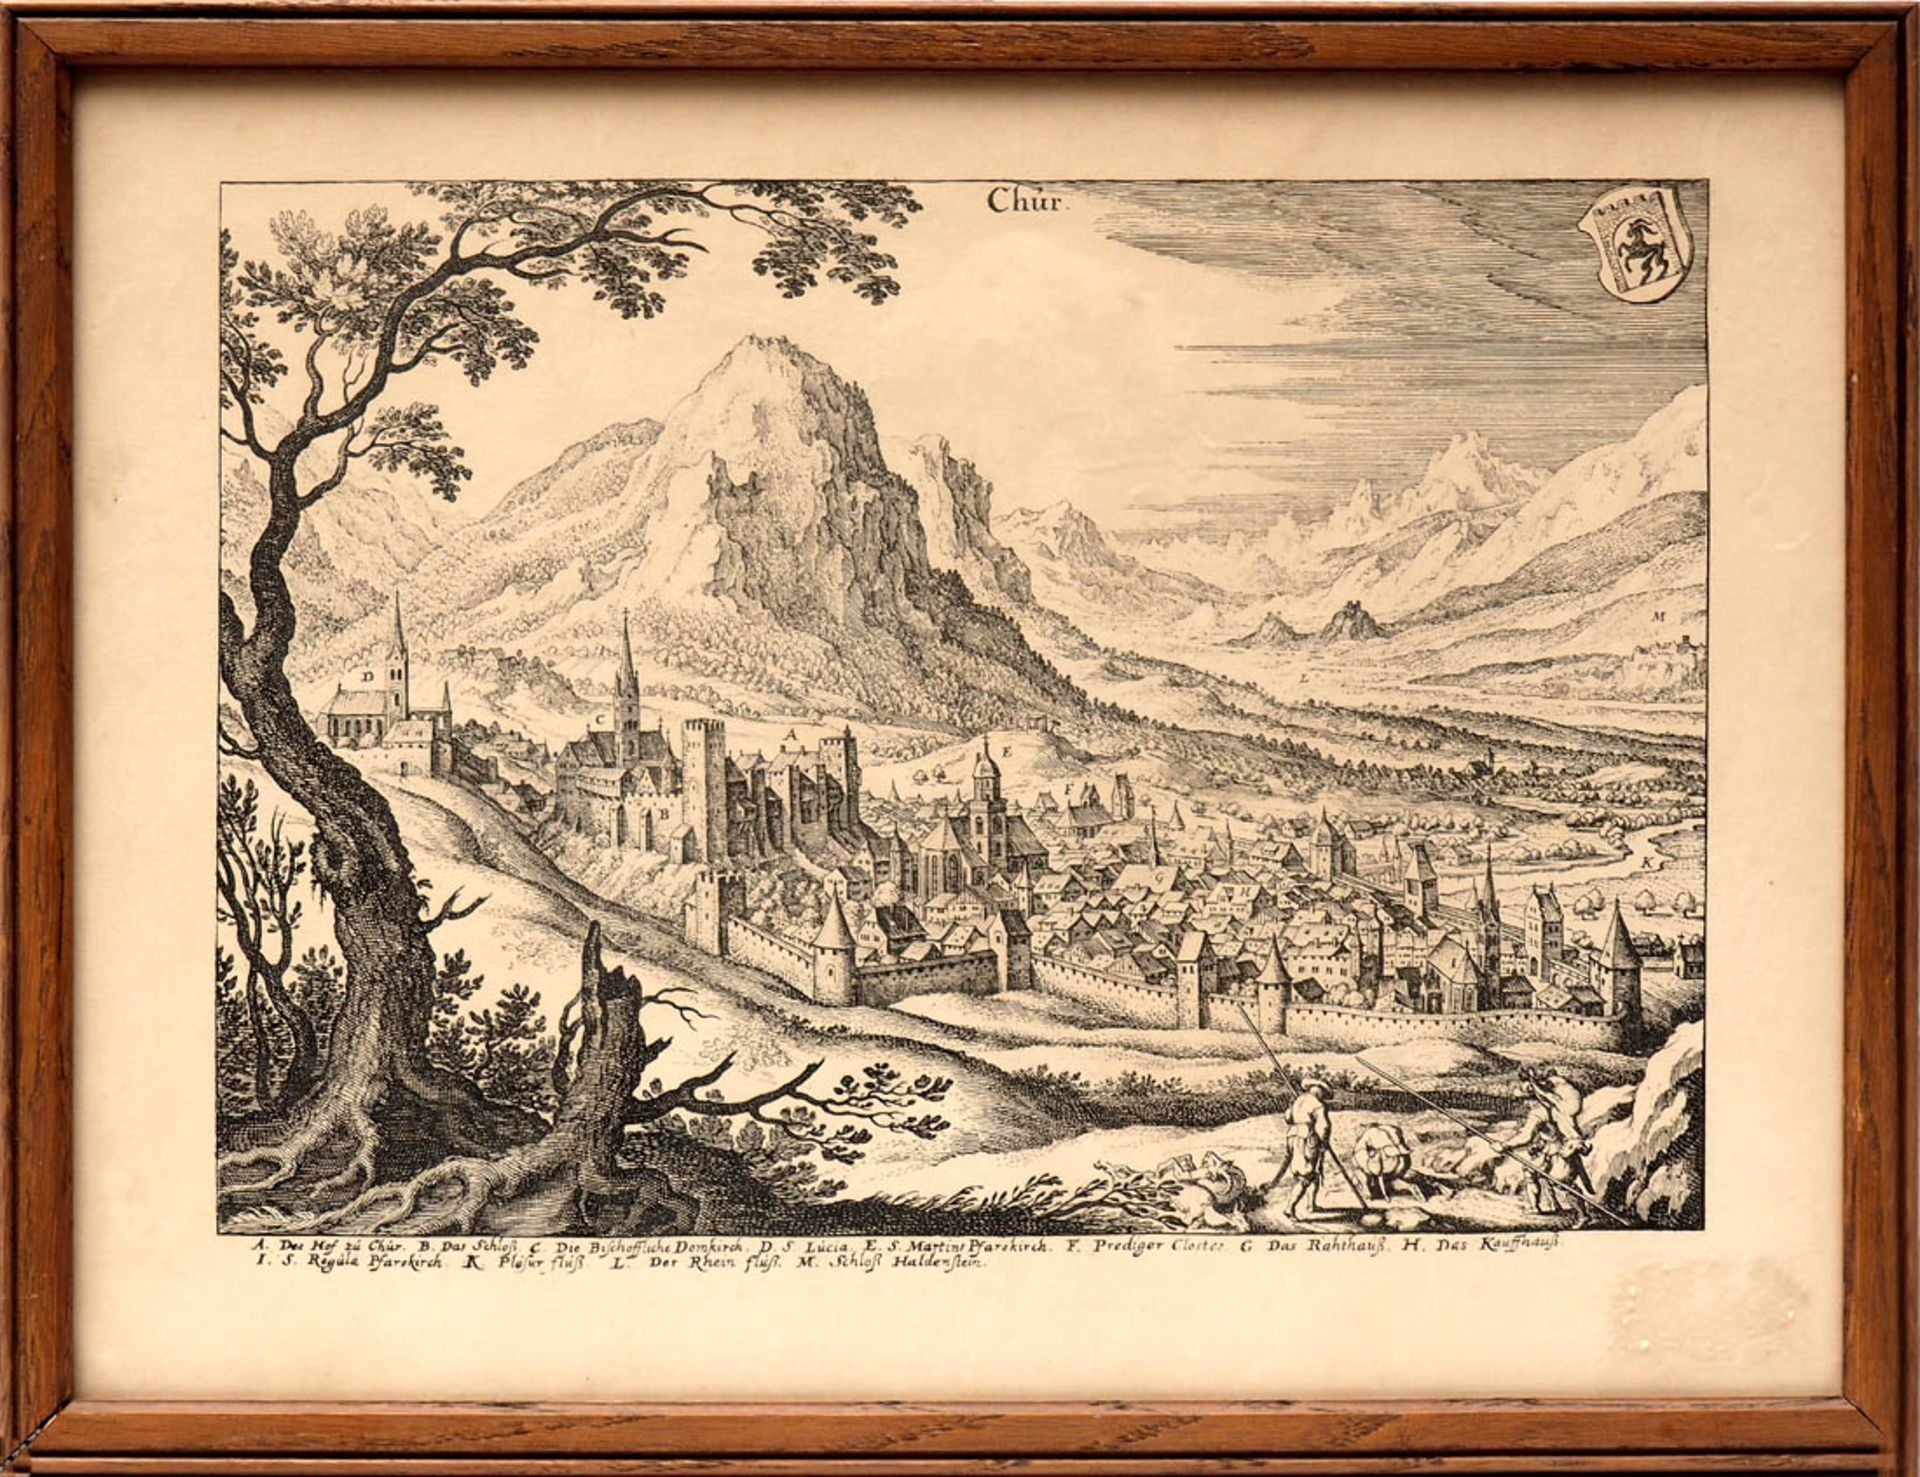 Merian, aus "Topographia Helvetiae", 1642 Ansicht von Chur mit umgebender Landschaft, im Vordergrund